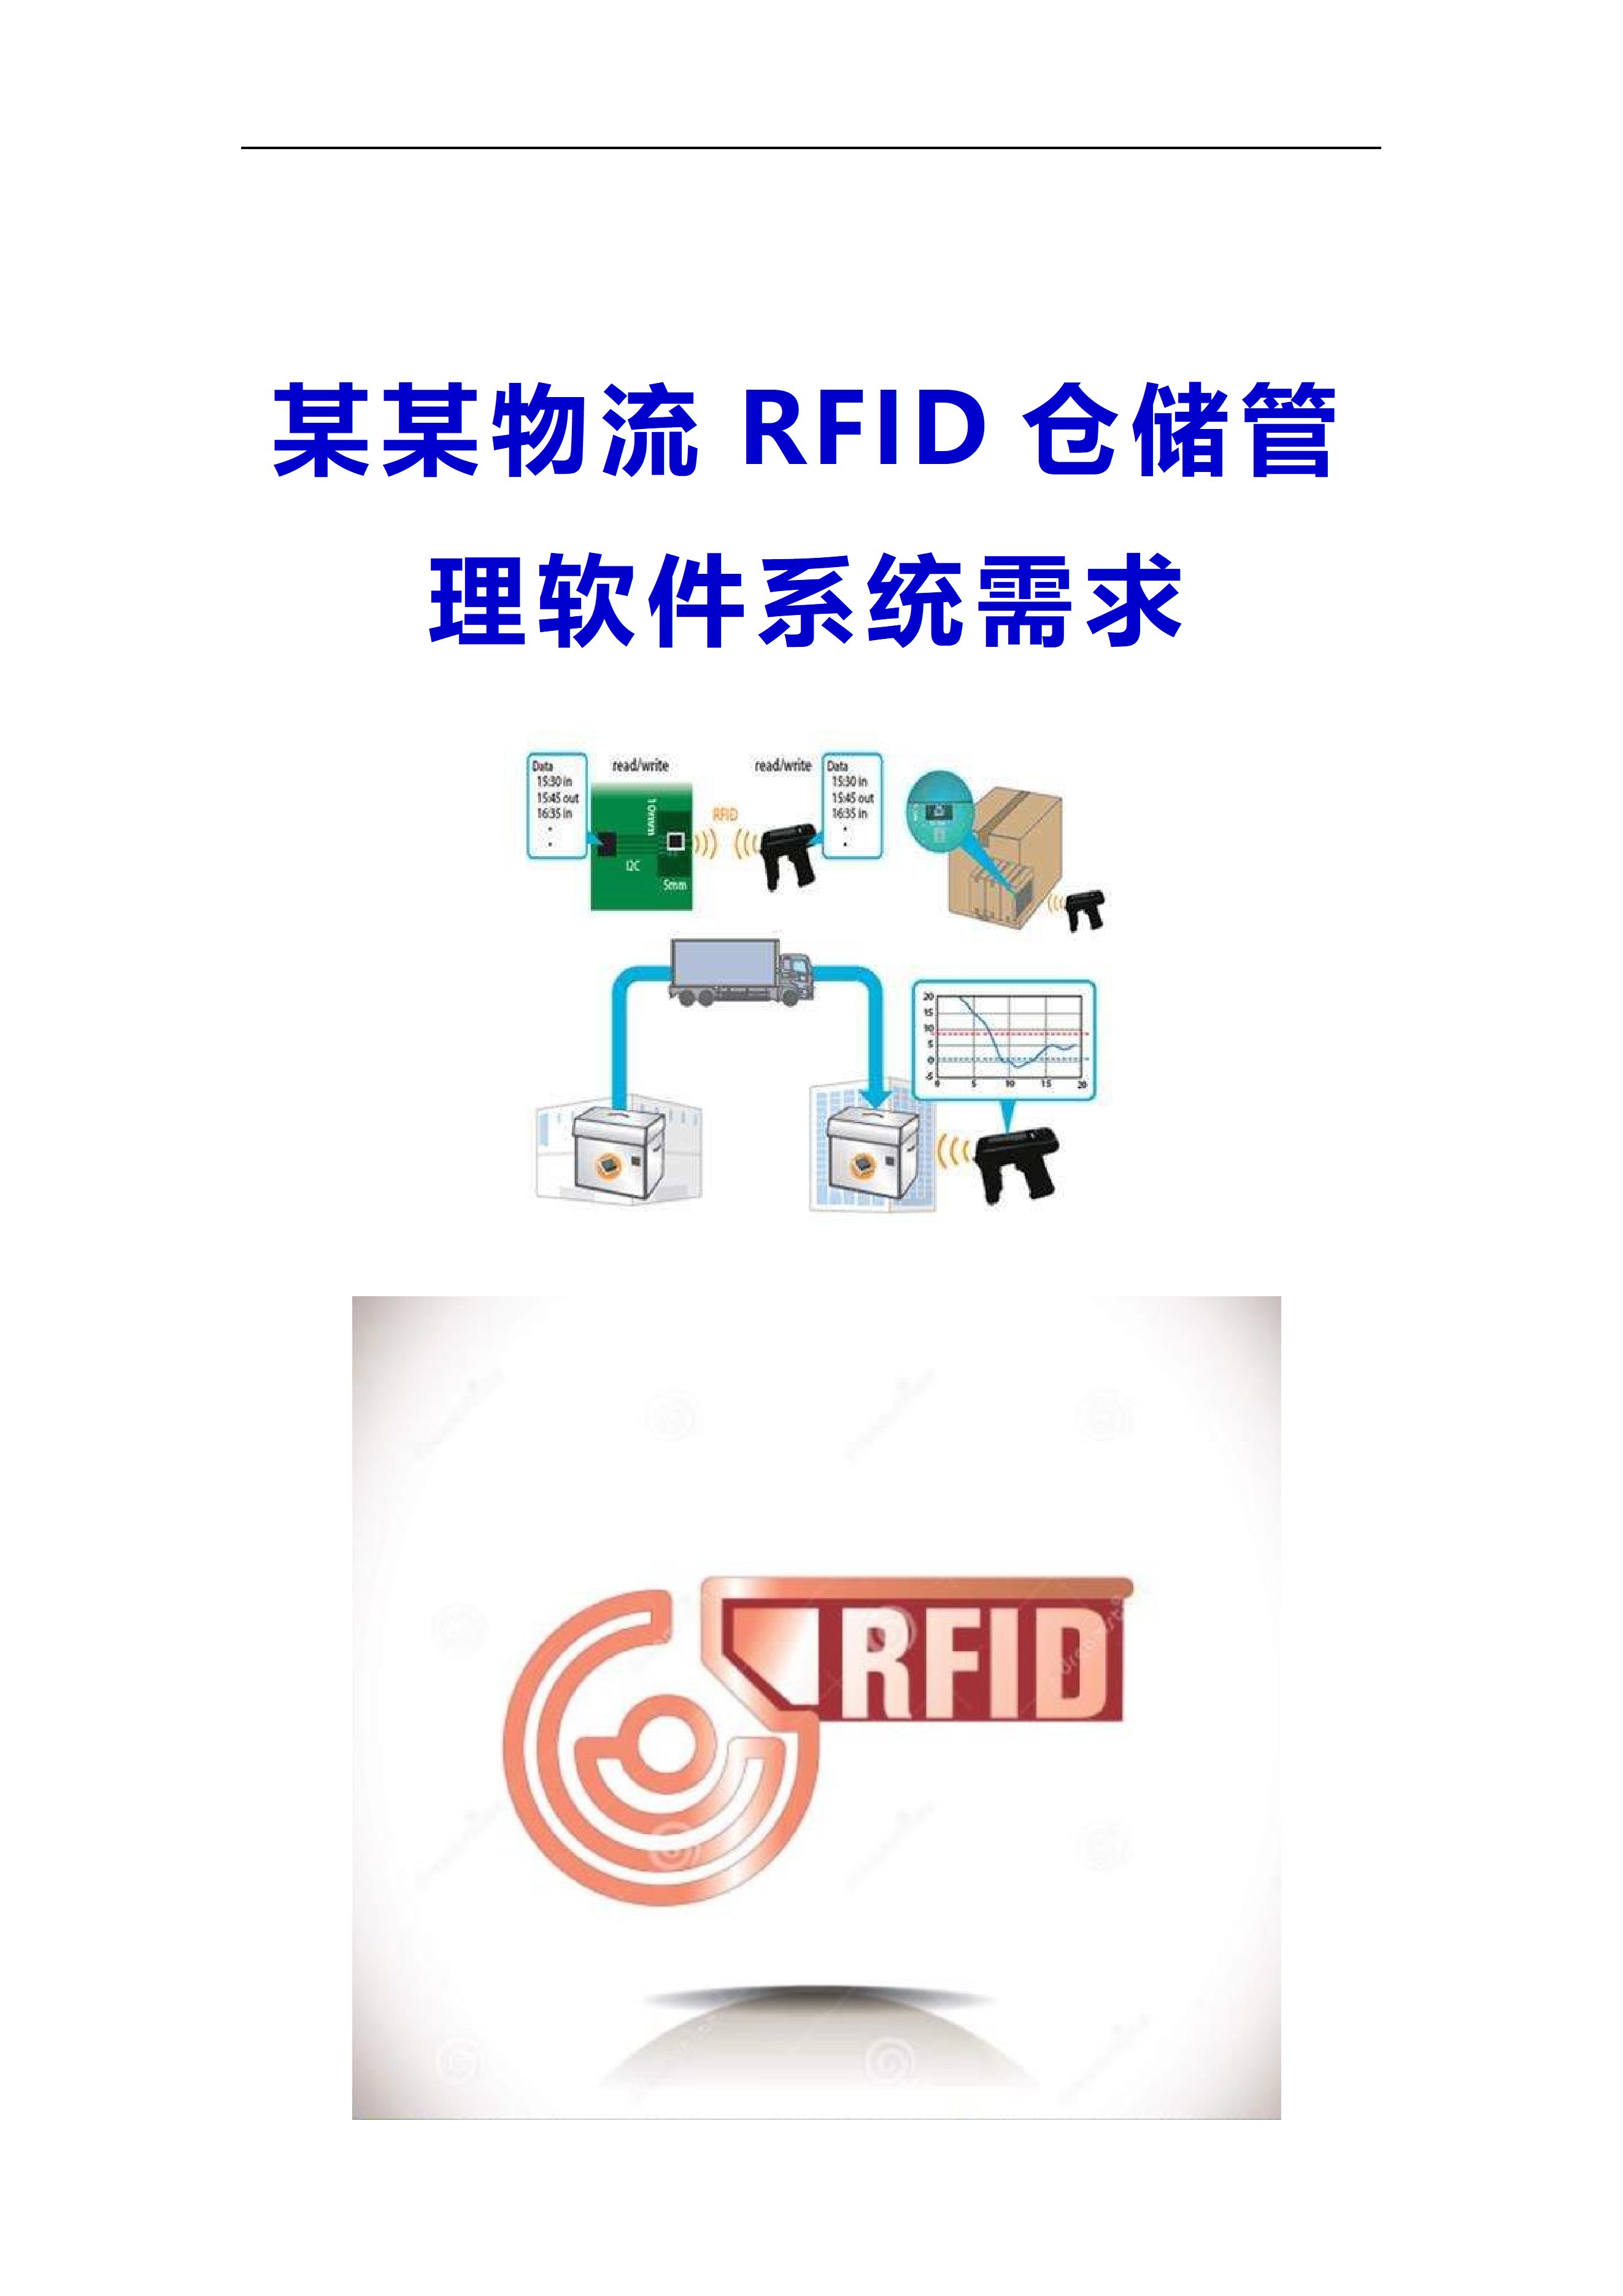 某某公司物流RFID仓储管理软件系统需求